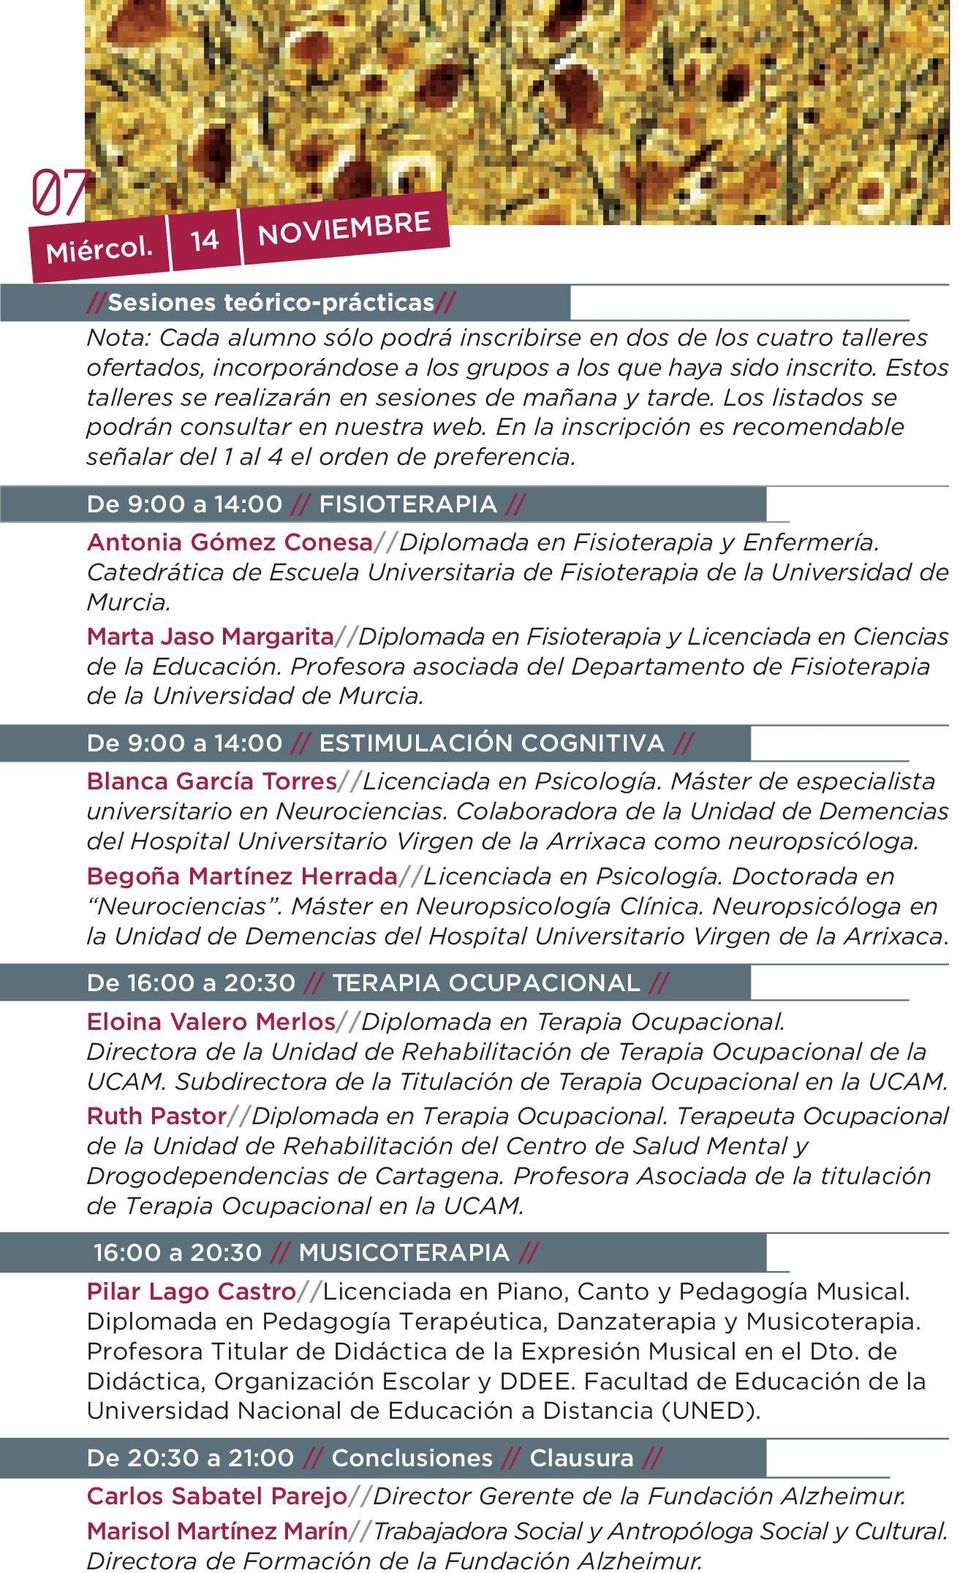 De 9:00 a 14:00 // FISIOTERAPIA // Antonia Gómez Conesa//Diplomada en Fisioterapia y Enfermería. Catedrática de Escuela Universitaria de Fisioterapia de la Universidad de Murcia.